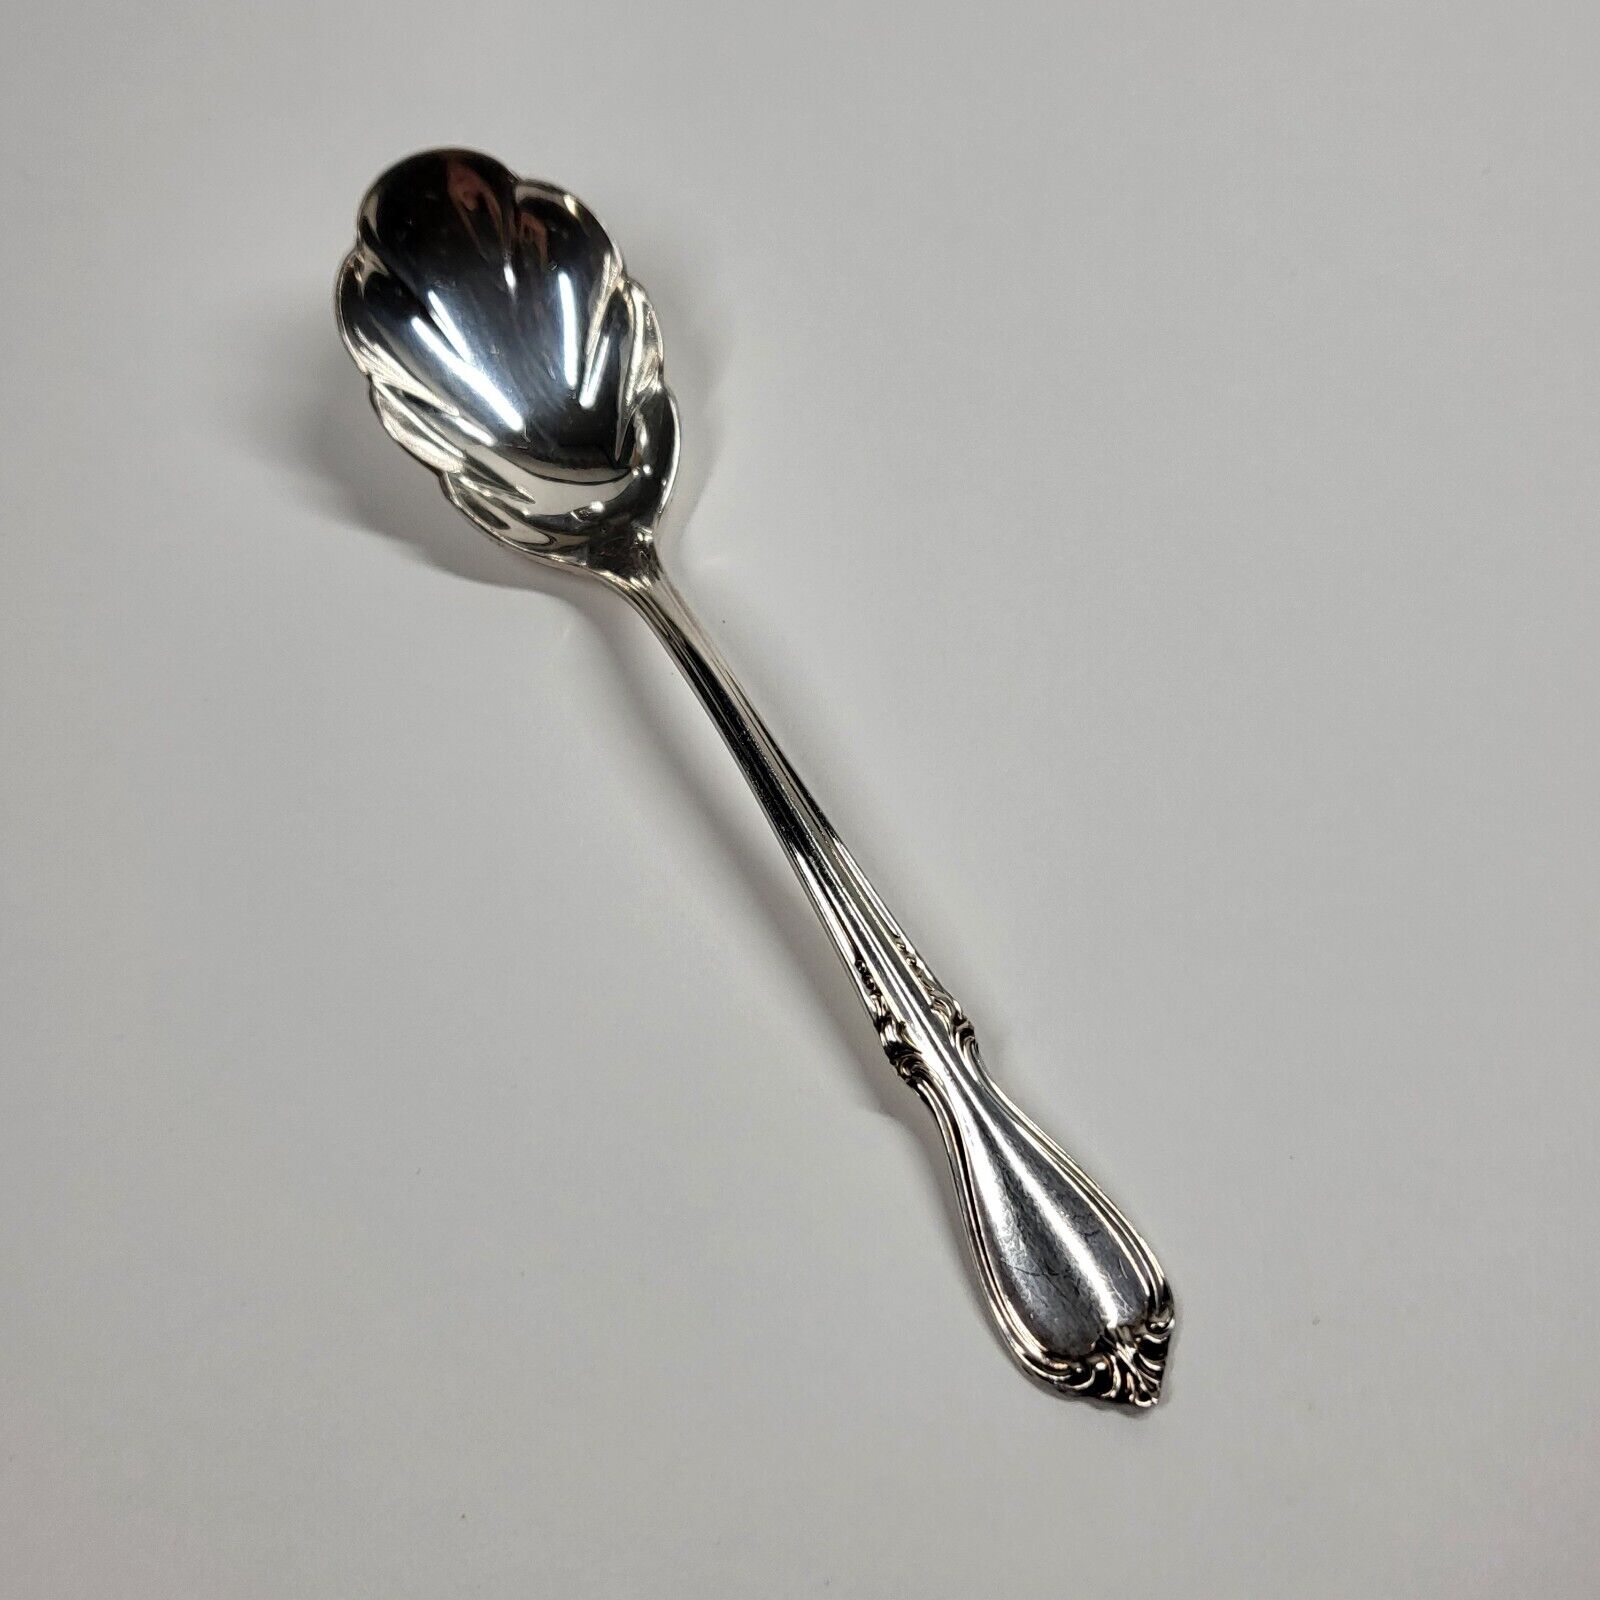 Wm Rogers Memory 1952 Sugar Spoon Flatware Silverplate Vintage International